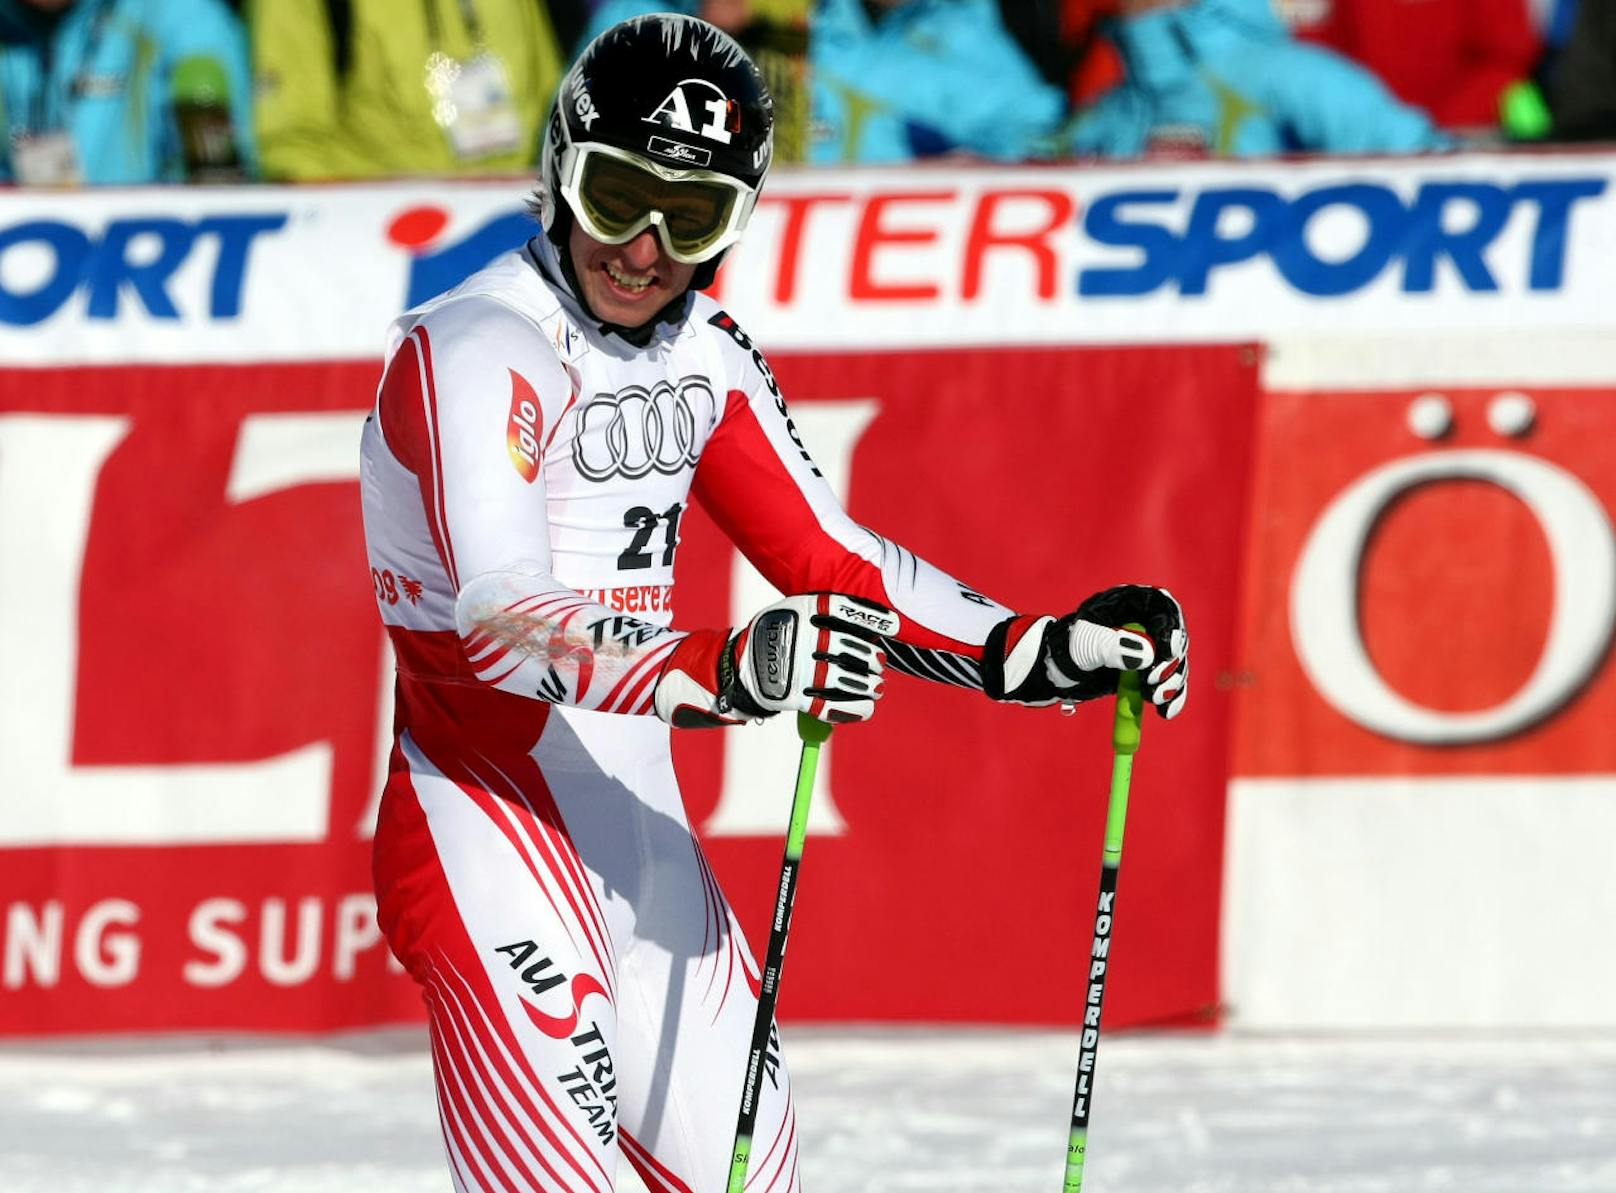 Der erste Rückschlag für Marcel Hirscher. Bei seiner ersten Ski-WM in Val d'Isere 2009 verpasst er im Riesentorlauf als Vierter Edelmetall nur um sieben Hundertstel. In Slalom und Kombination scheidet er aus.